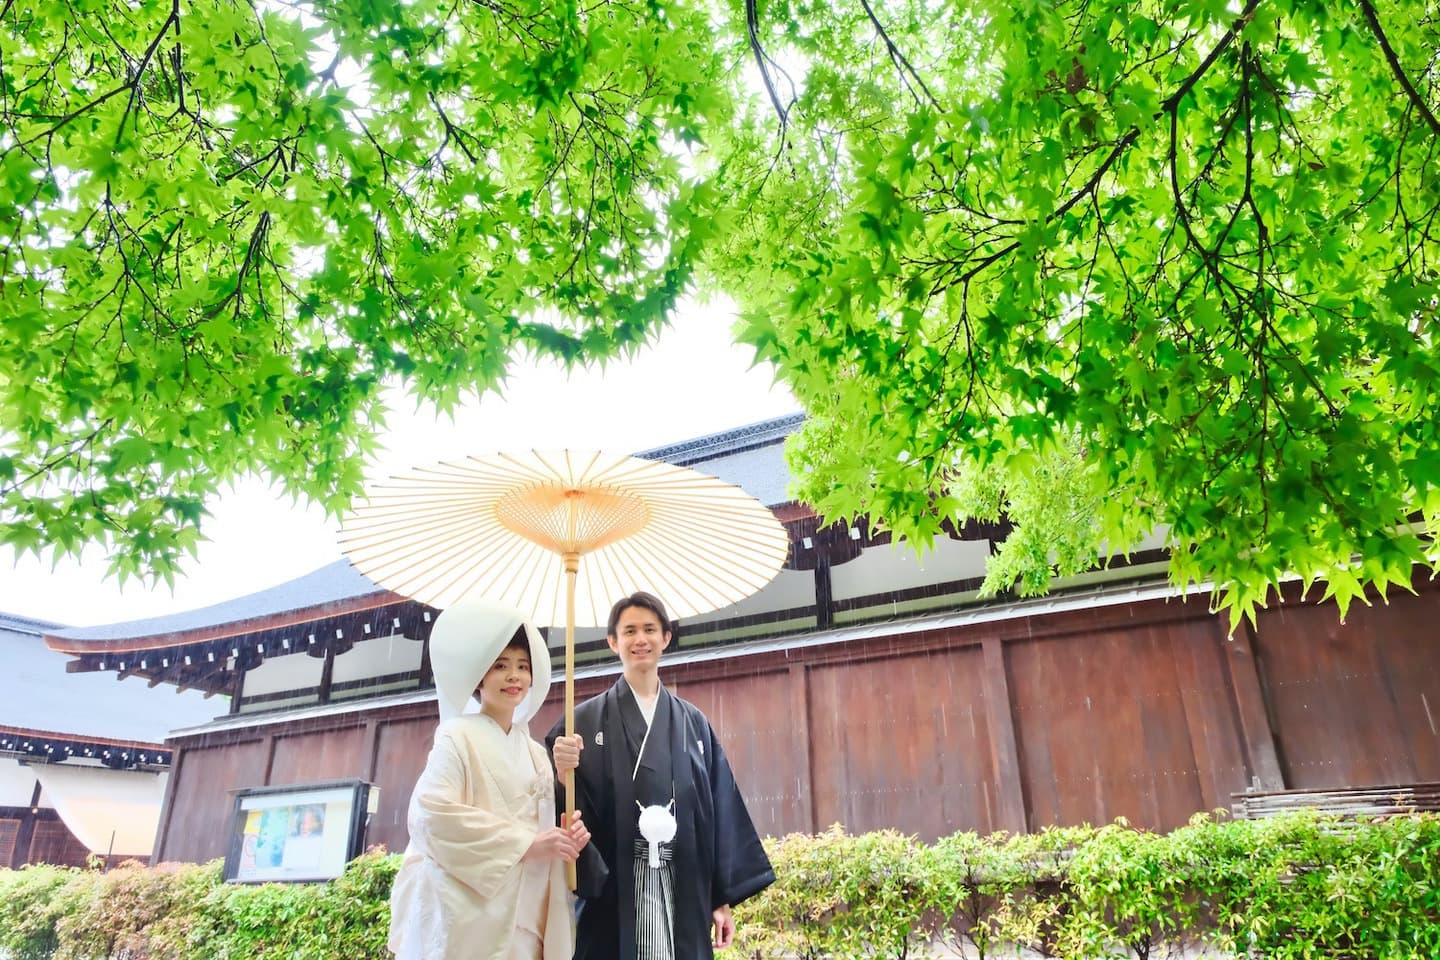 下鴨神社での神前結婚式の写真